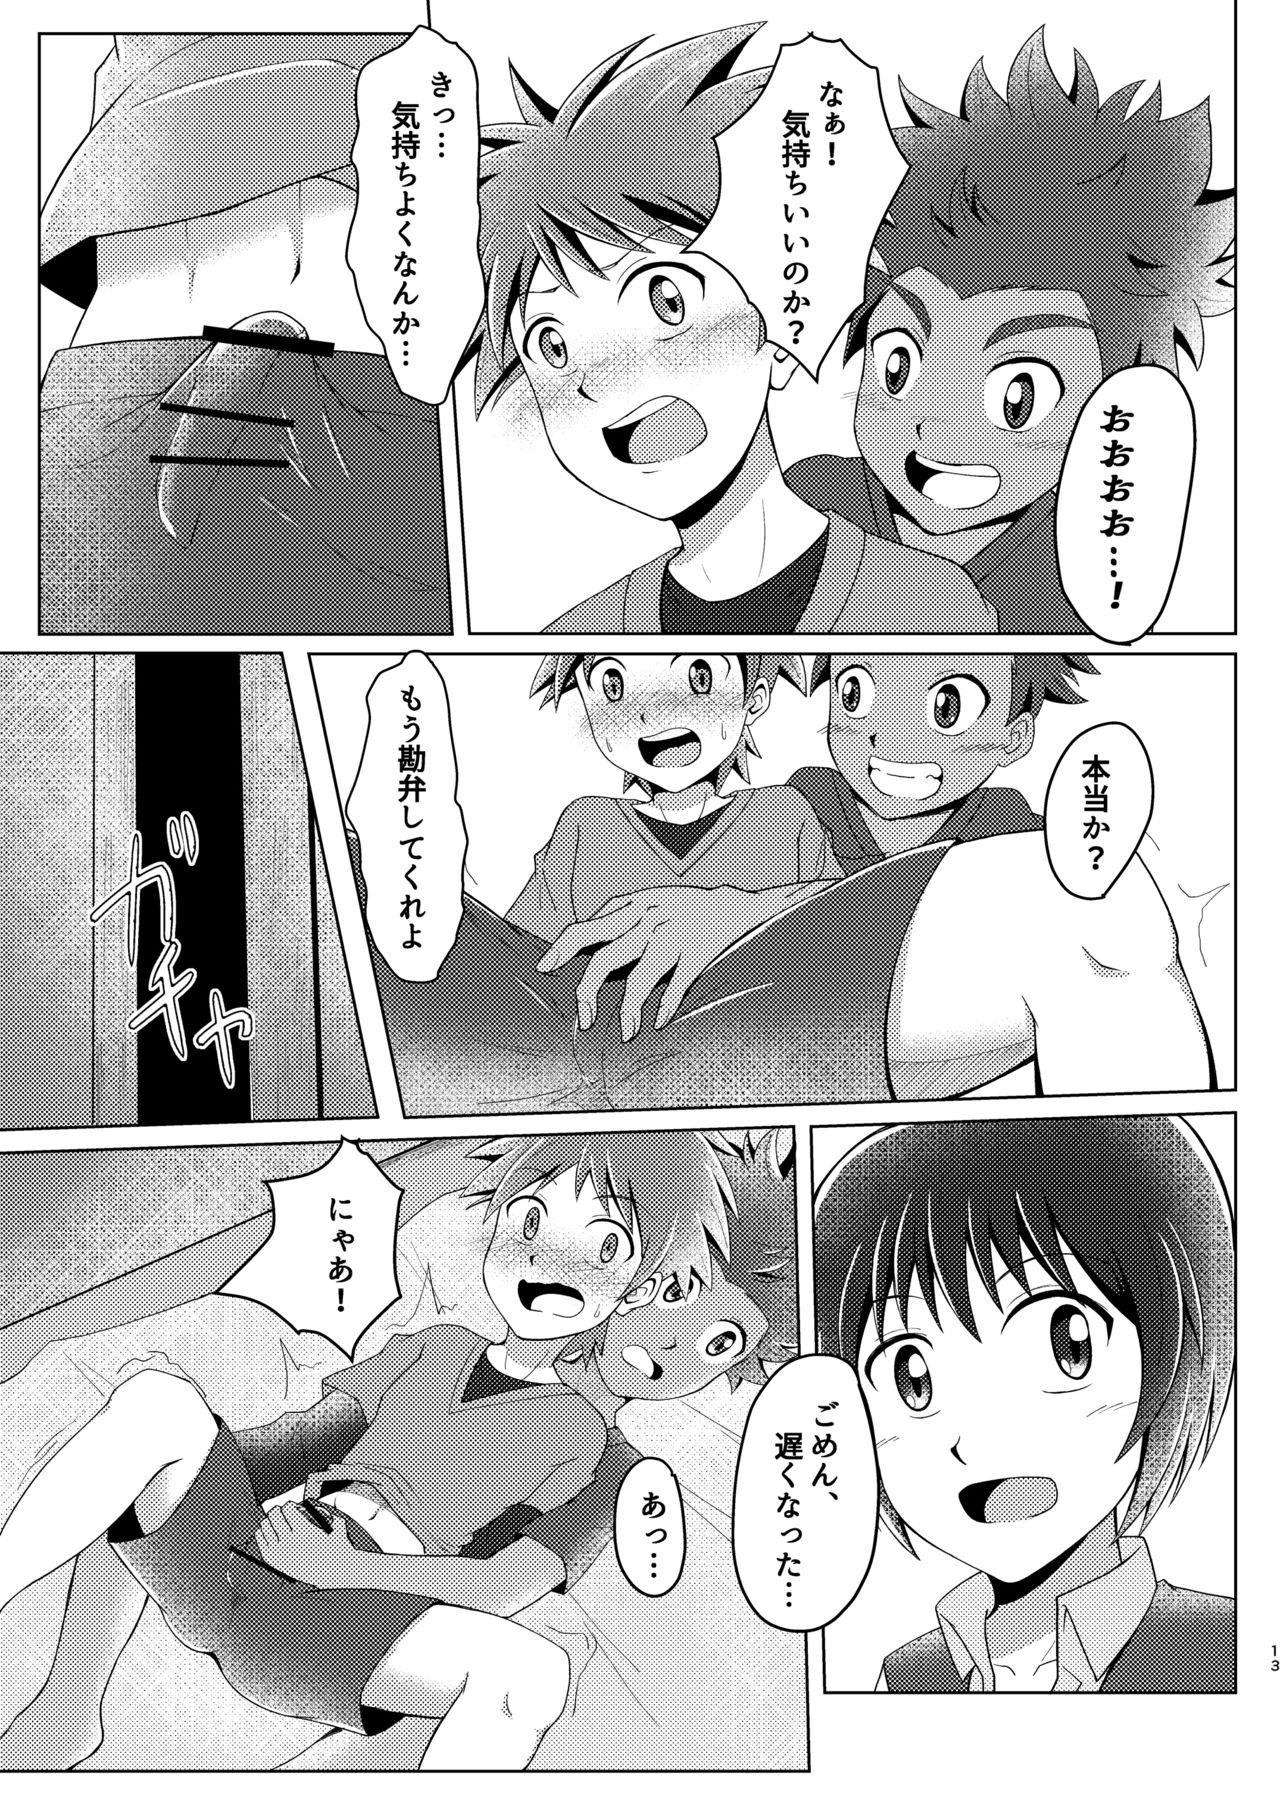 Con Boku no Hajimete wa Pantsu no Nakadatta - Original Free 18 Year Old Porn - Page 12